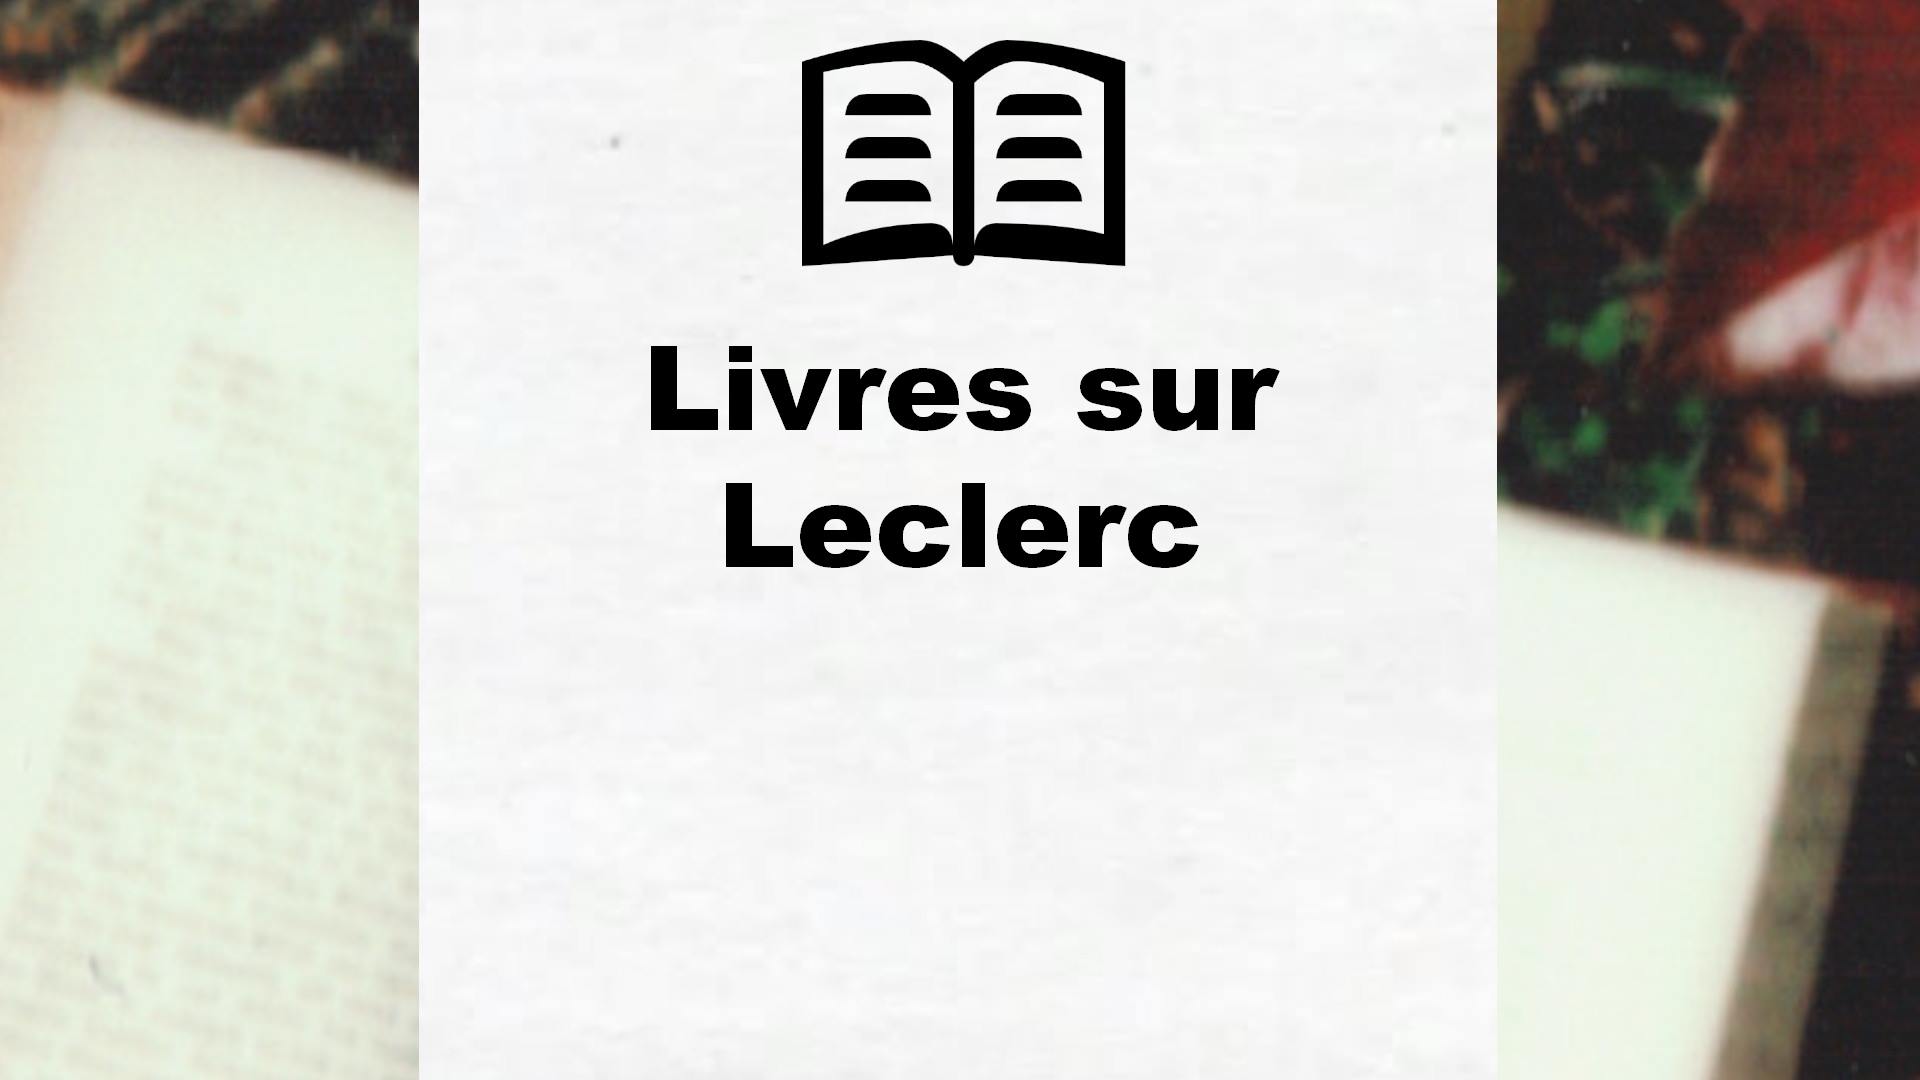 Livres sur Leclerc